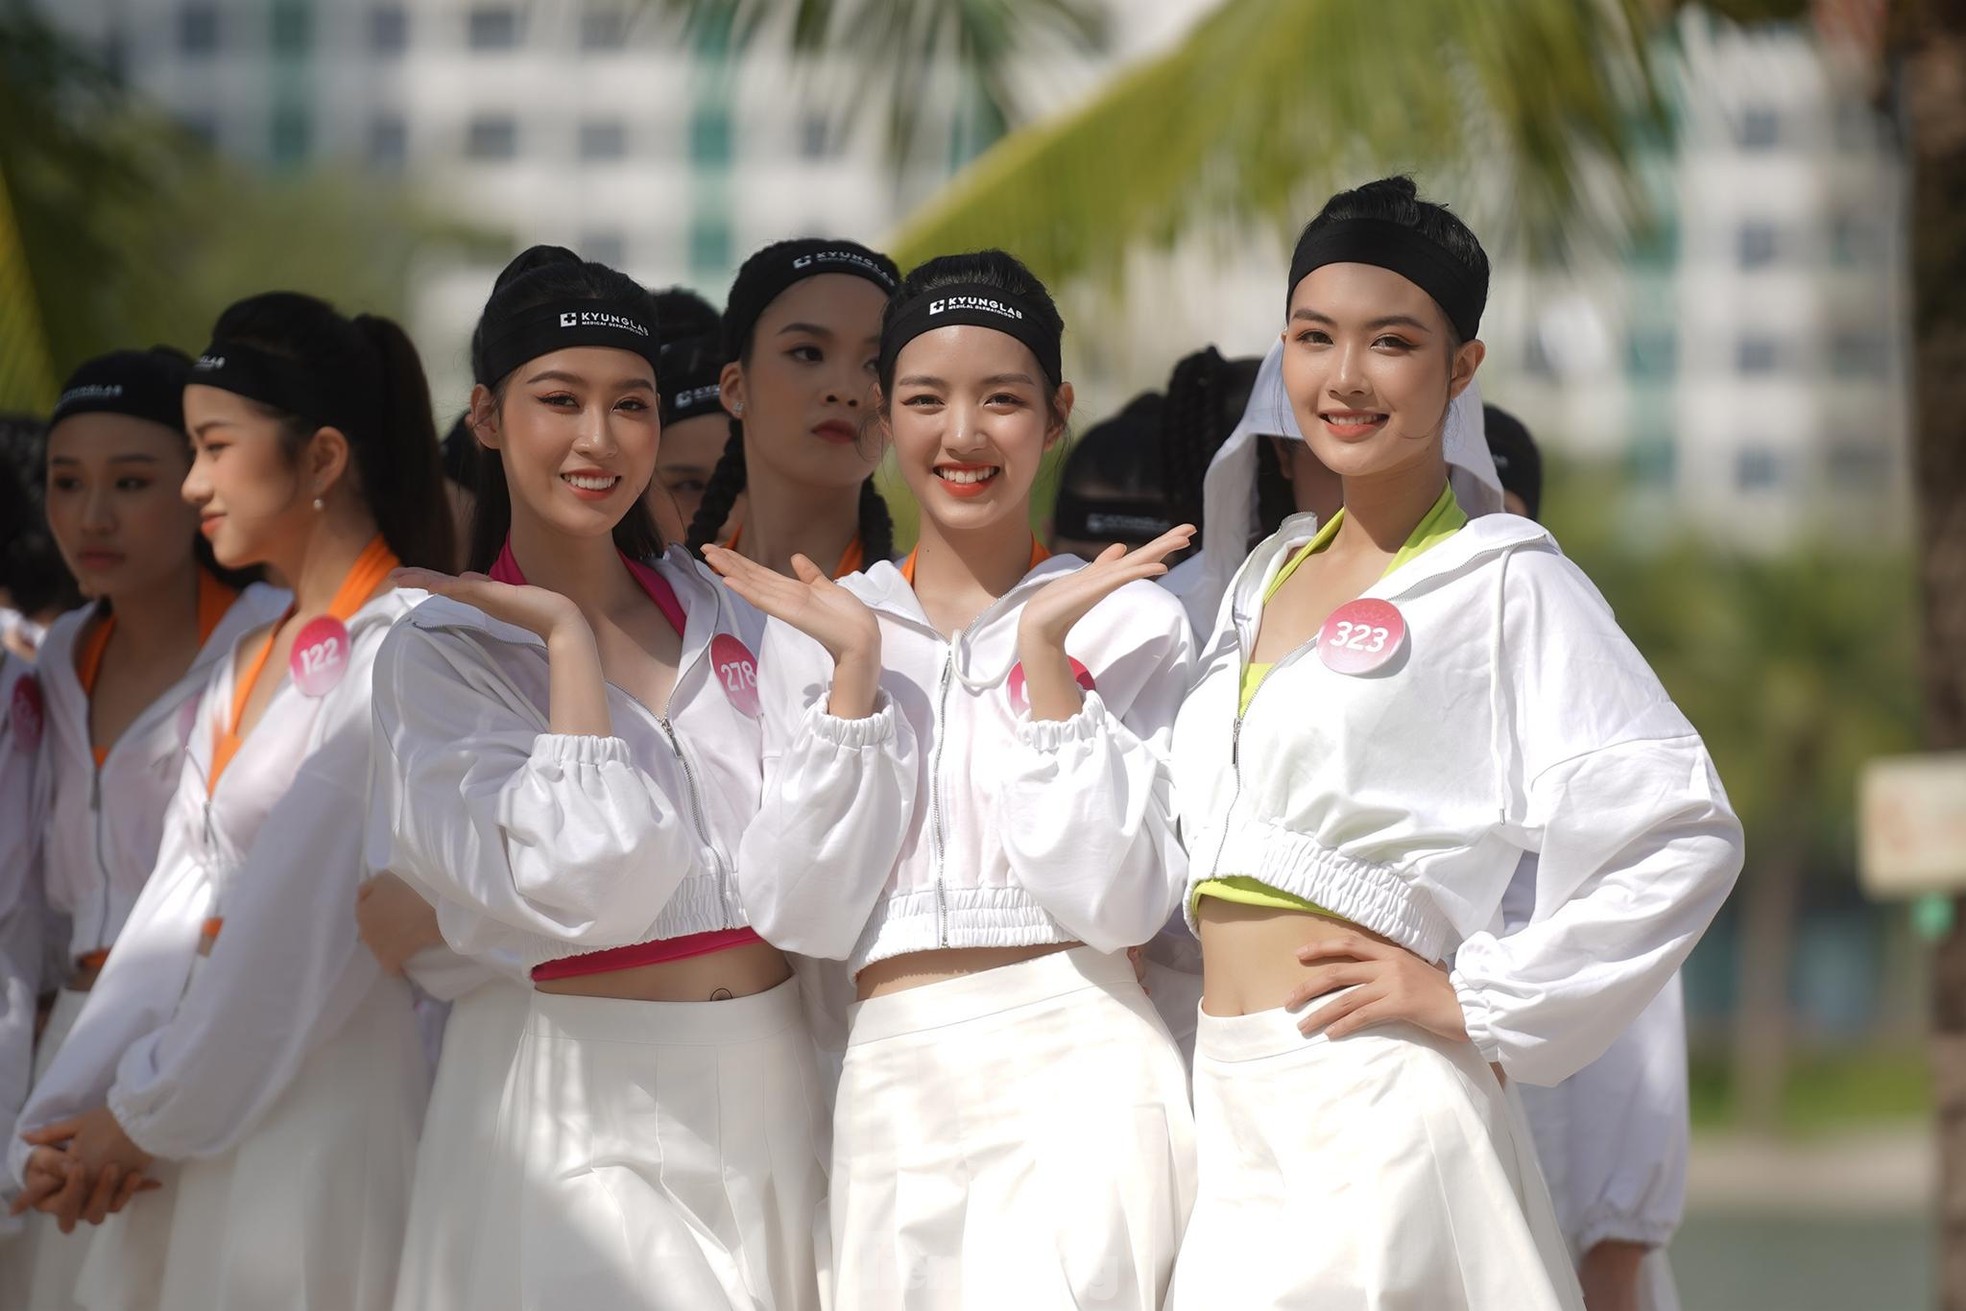 Nhan sắc cận của thí sinh Hoa hậu Việt Nam trong ngày thi Người đẹp Thể thao - Ảnh 15.